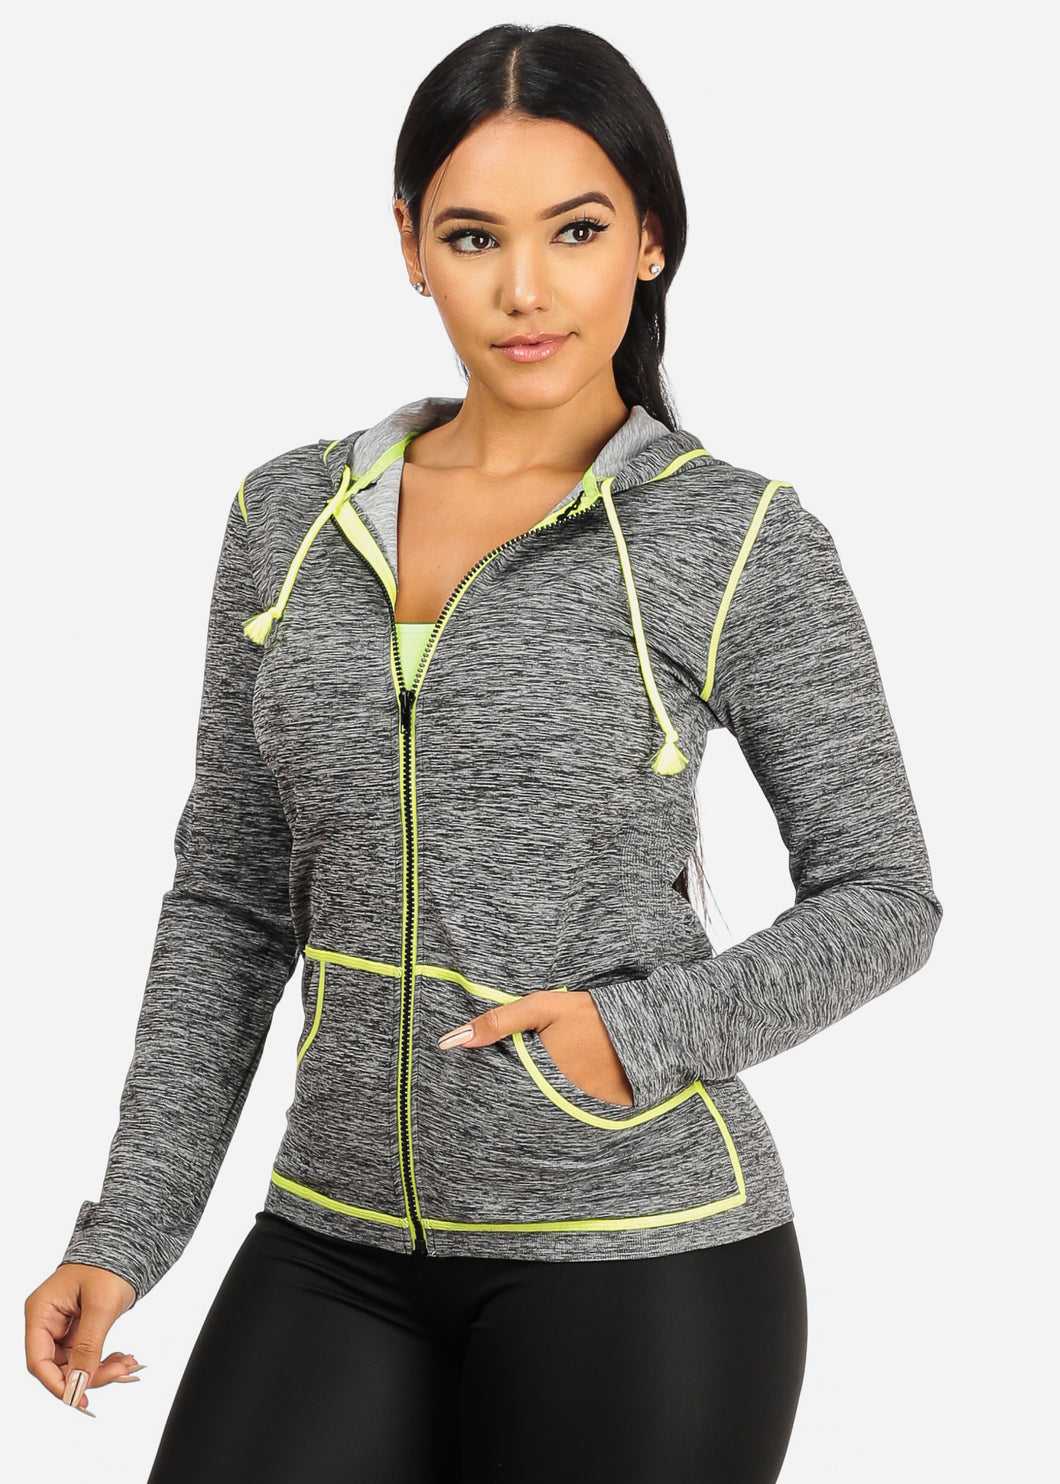 Neon Green Light Women,s Long Sleeves Active Sports Wear Hoodie HD001